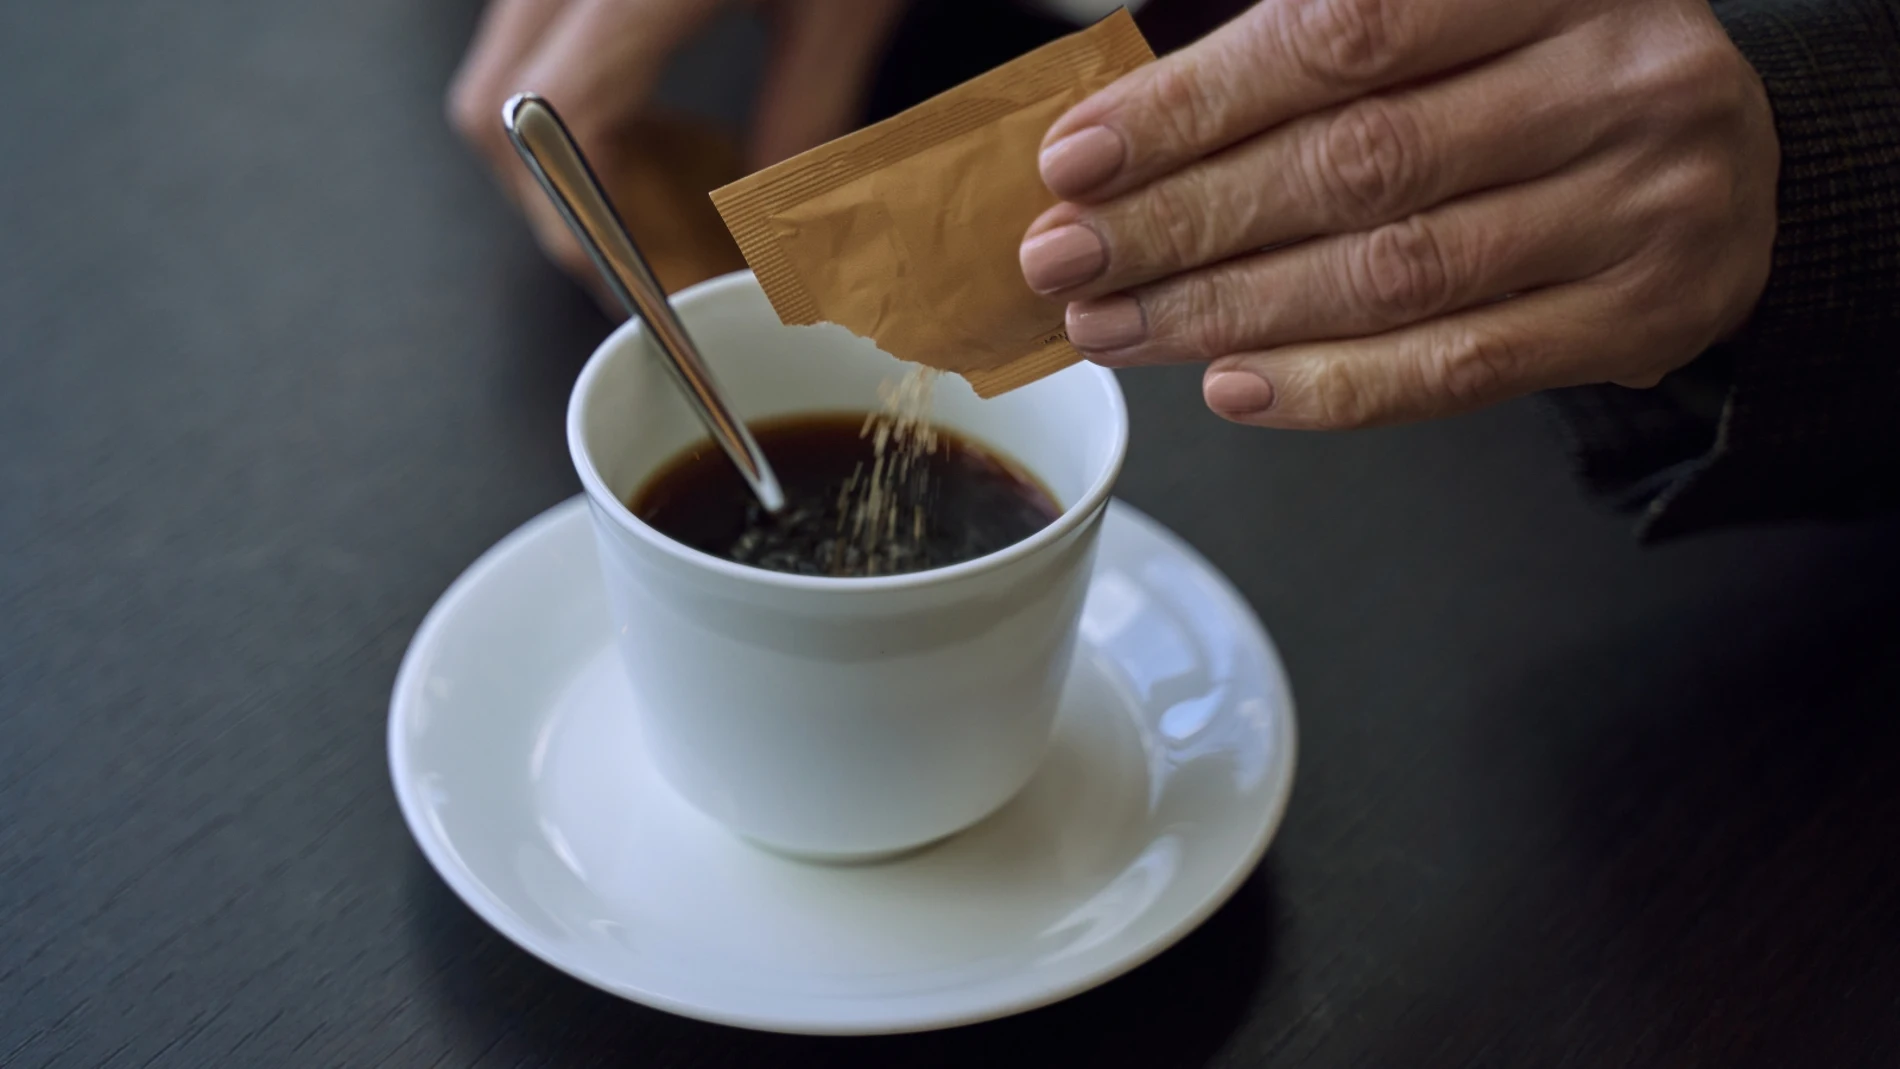 ¿Puede provocar cáncer el café descafeinado?